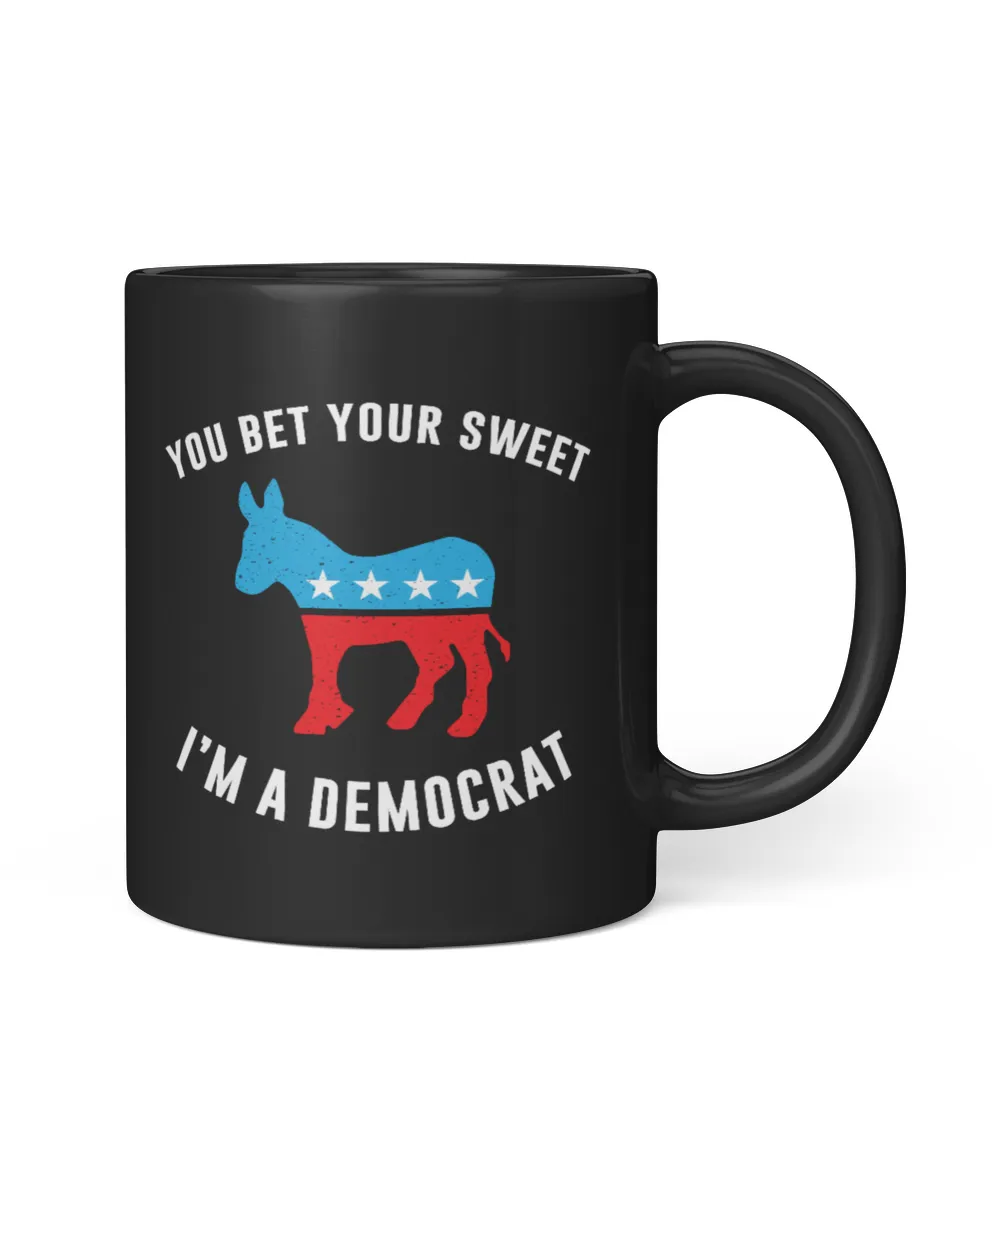 I'm a Democrat